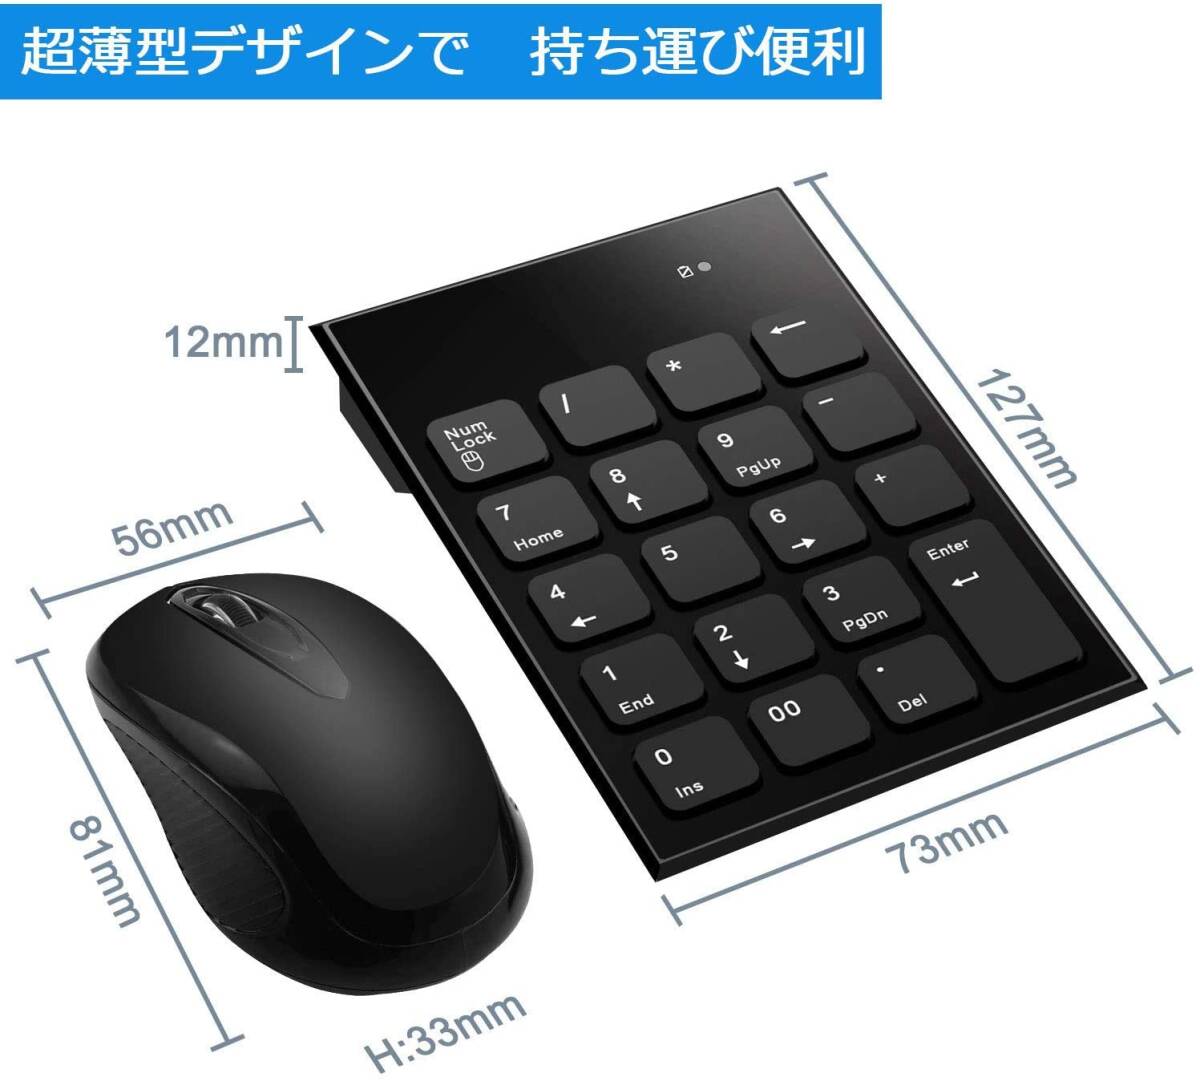 Rytaki ワイヤレステンキーとマウスセット、USB受信機能付き 2.4G Mini USB 数字キーボードとマウスセットはラップトップ、